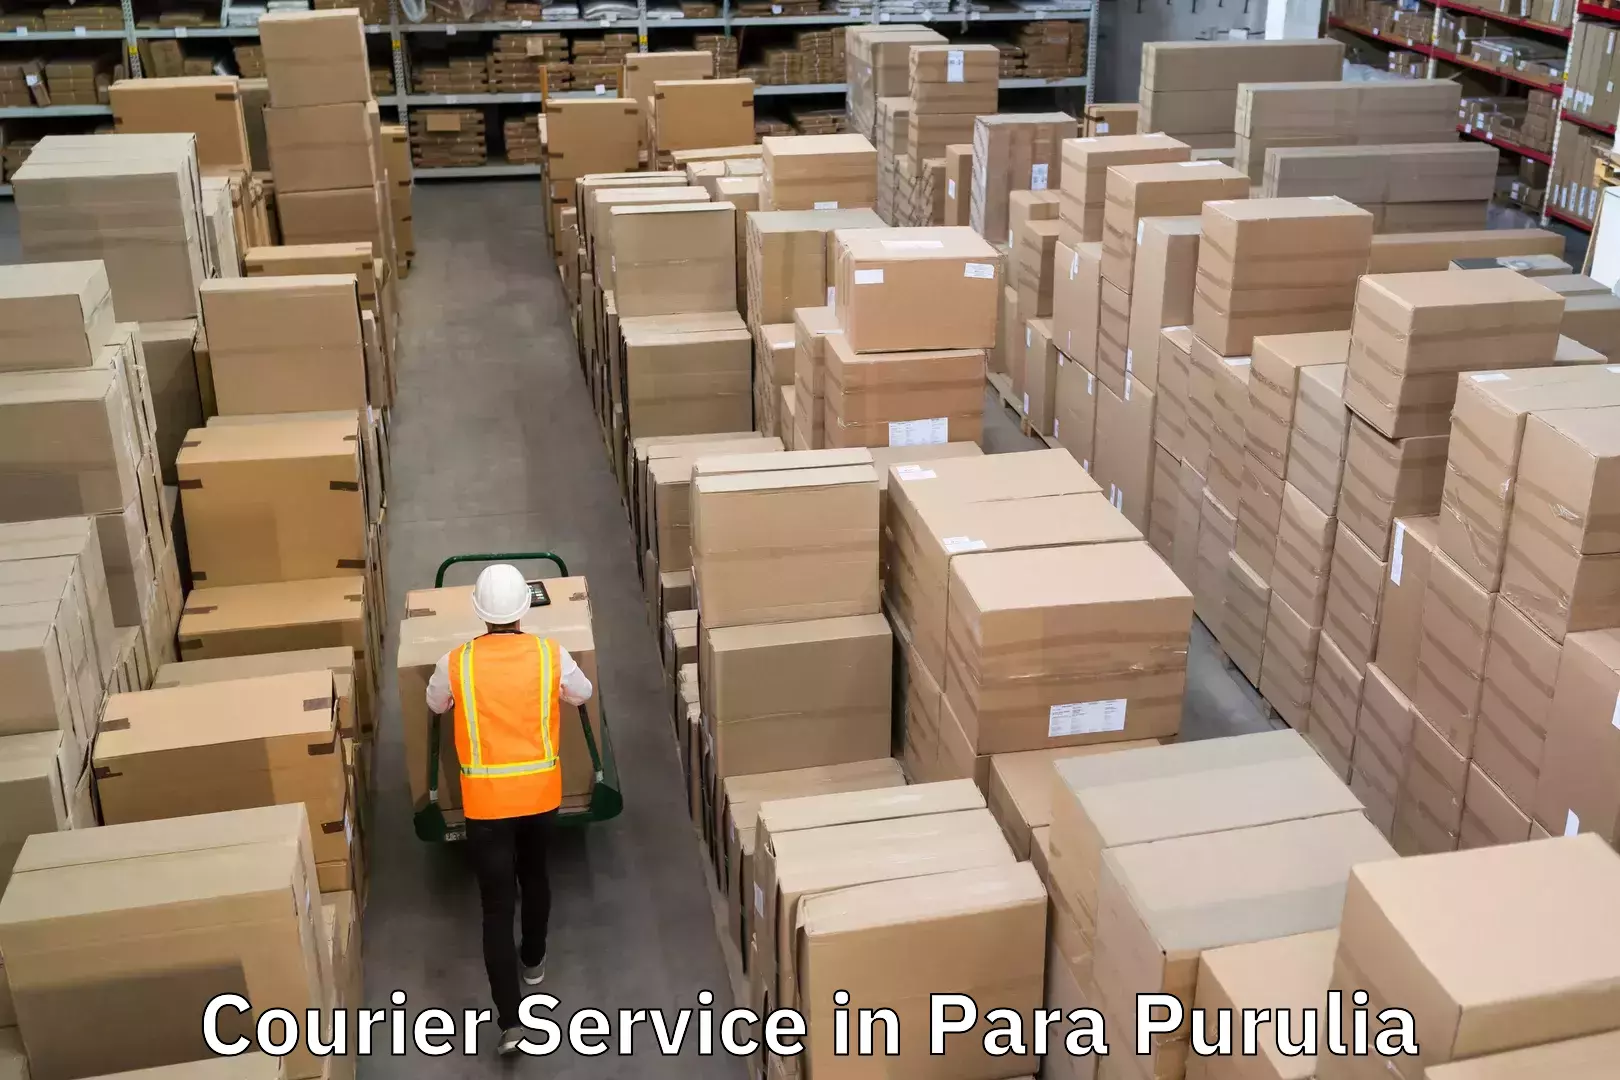 Courier service comparison in Para Purulia